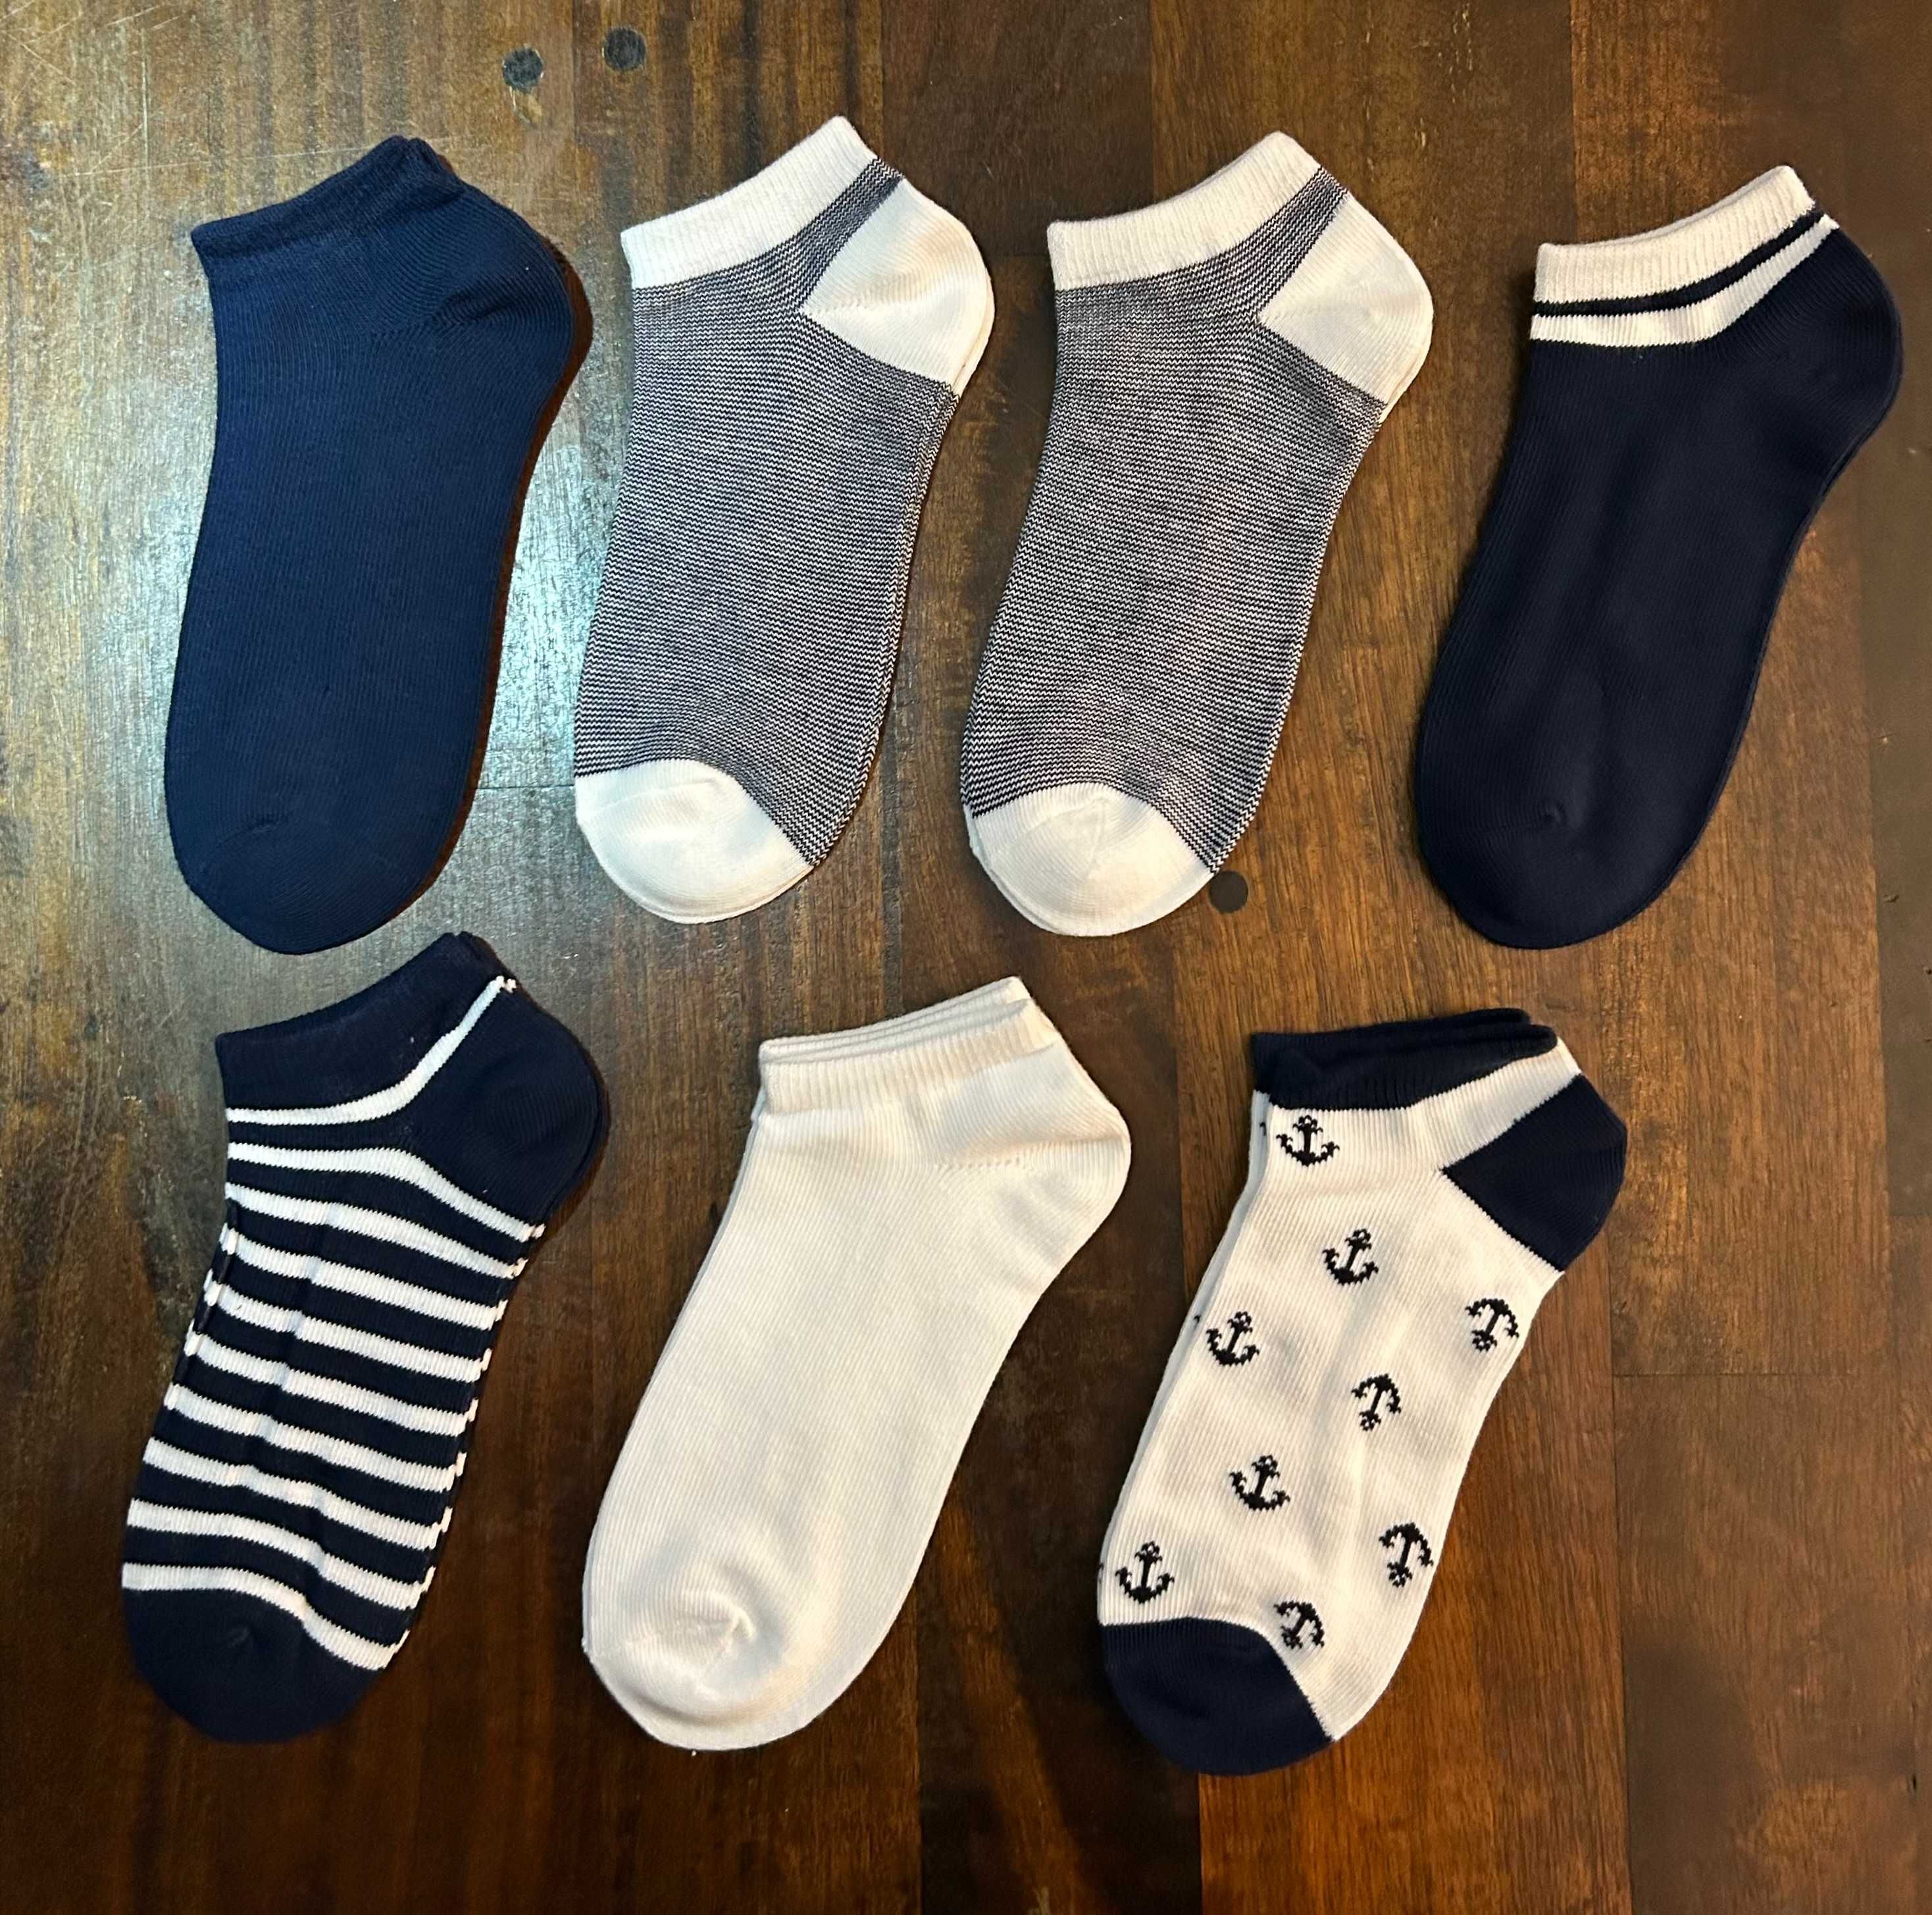 Шкарпетки кольорові діно від h&m -7 шт від 22 до 36 розміру